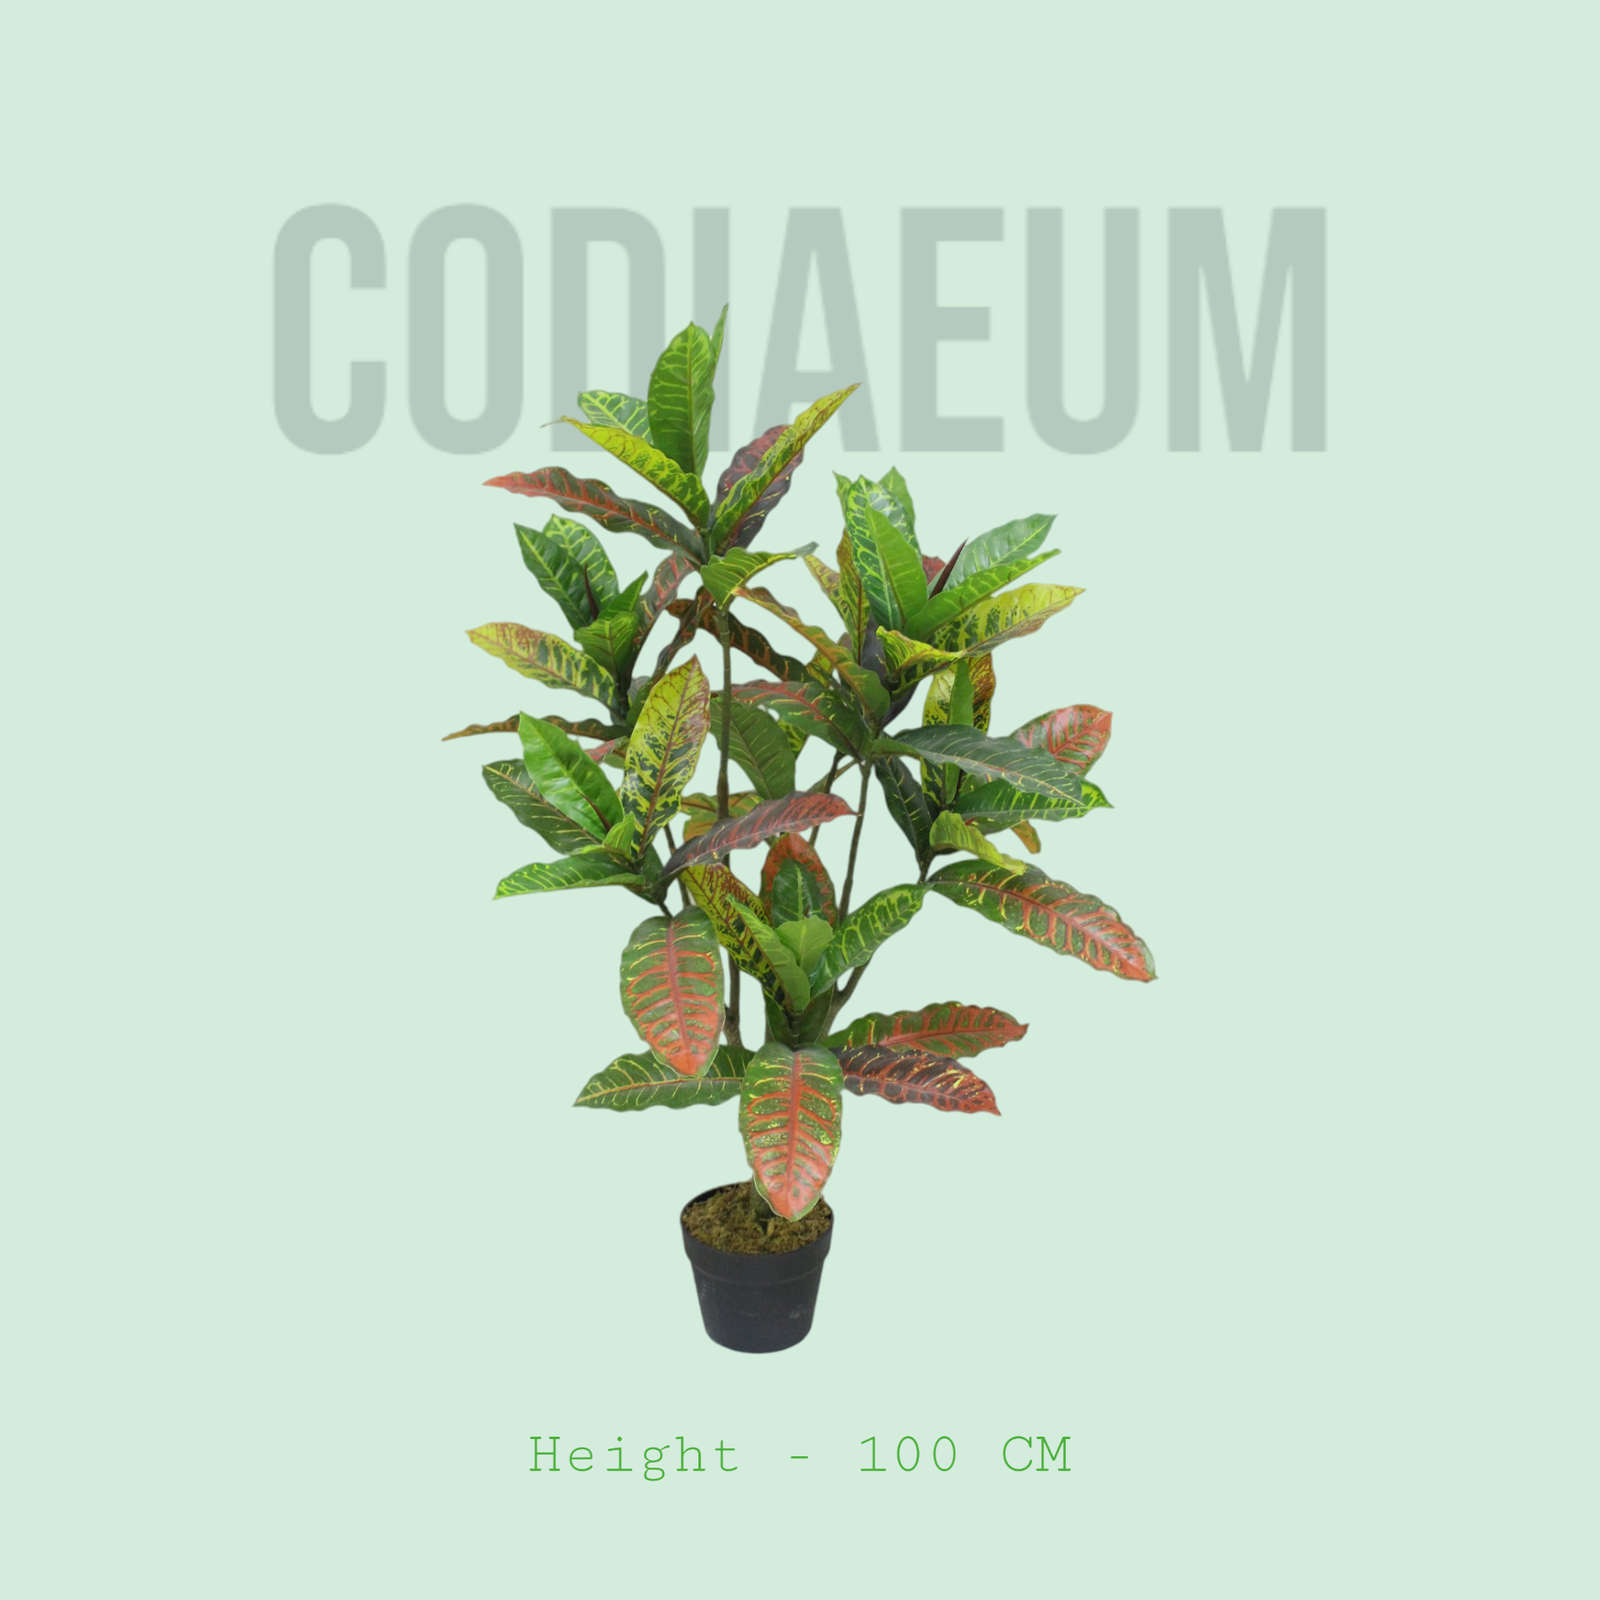 Codiaeum plant